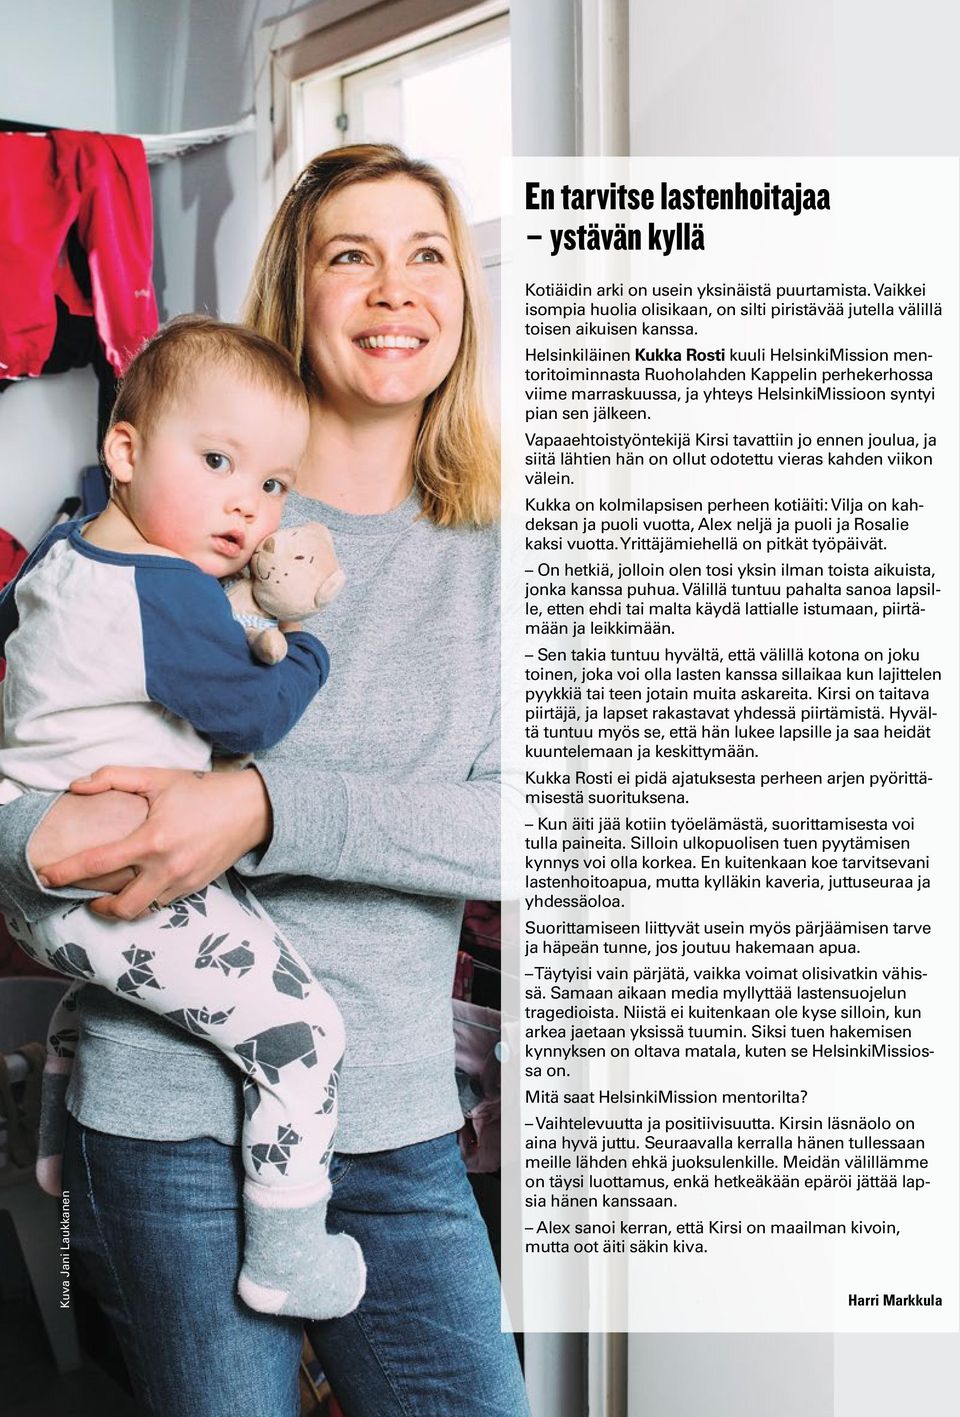 Helsinkiläinen Kukka Rosti kuuli HelsinkiMission mentoritoiminnasta Ruoholahden Kappelin perhekerhossa viime marraskuussa, ja yhteys HelsinkiMissioon syntyi pian sen jälkeen.